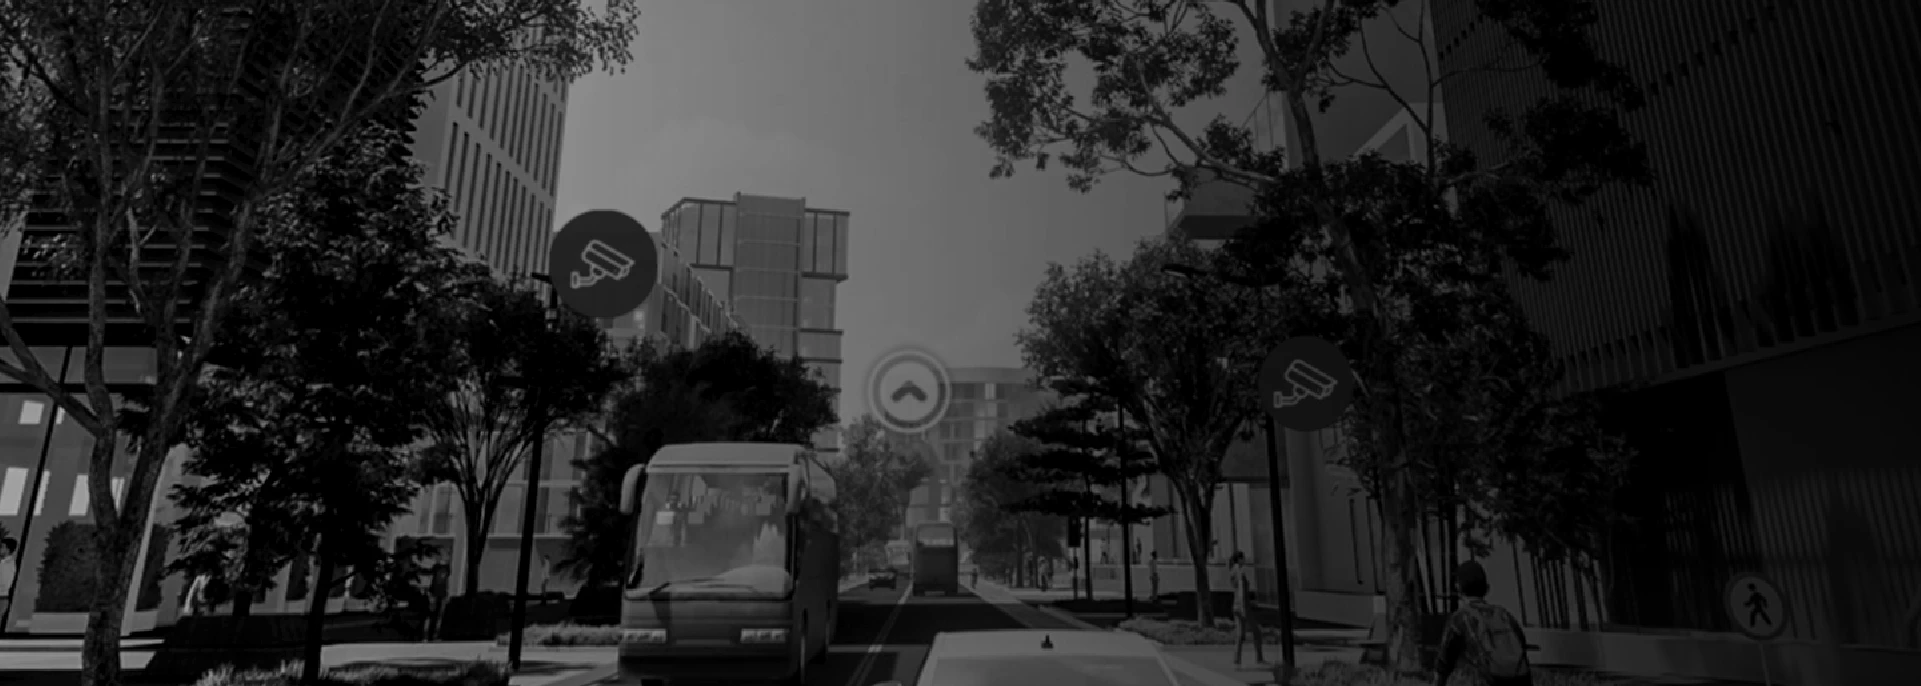 banner de hikvision paisaje urbano con edificios y autobuses